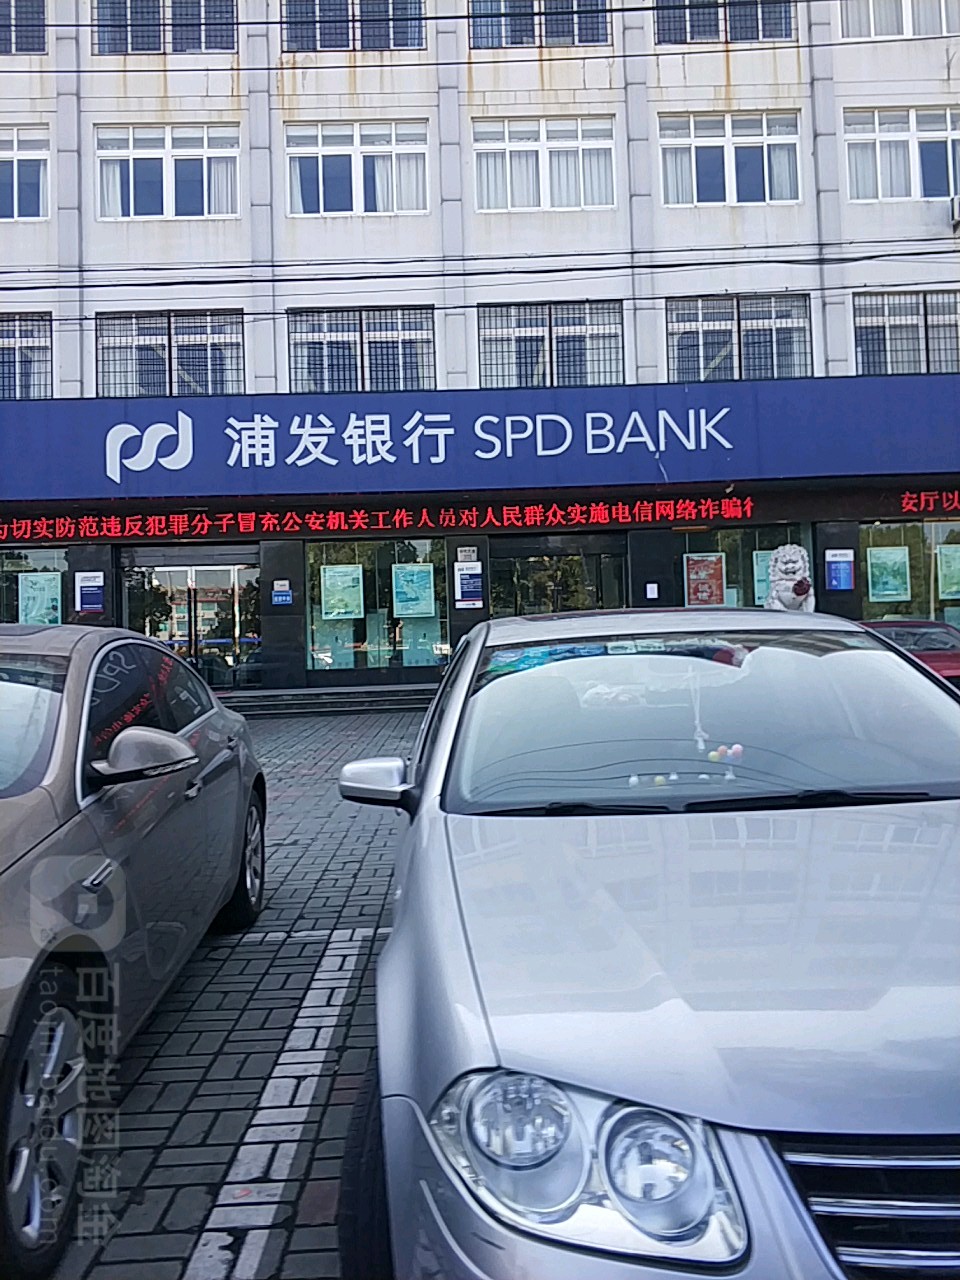 上海浦東發展銀行(寧海支行)